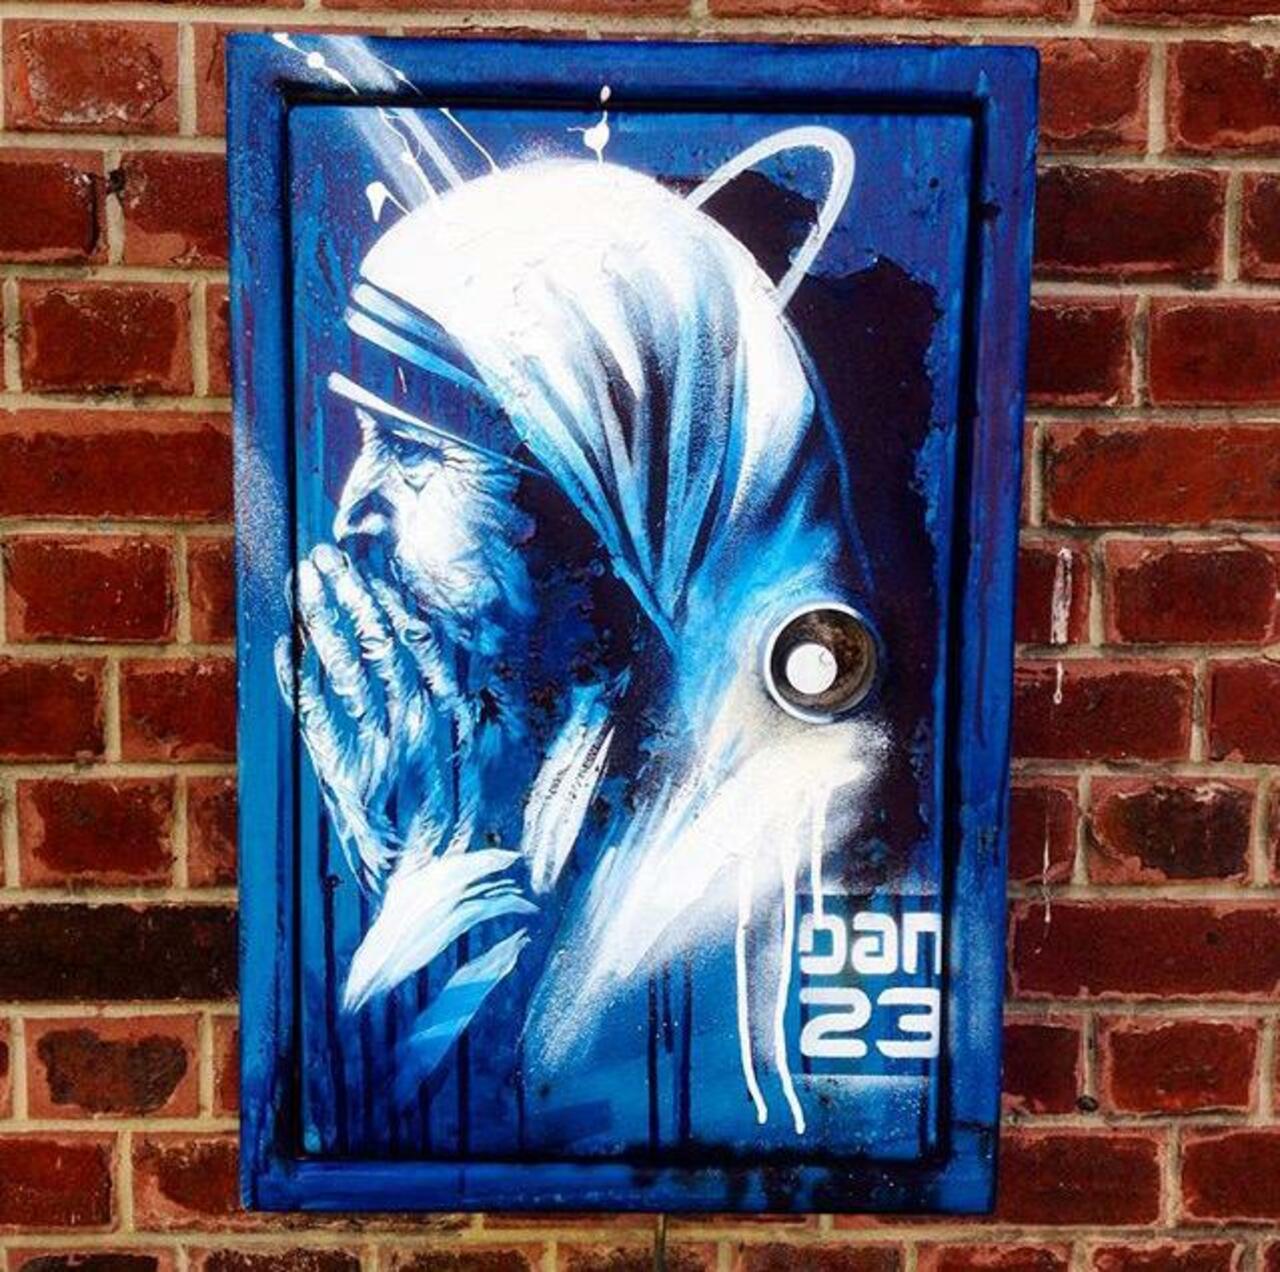 New Street Art 'Détail Spirit' by Dan23 

#art #graffiti #mural #streetart http://t.co/EGdV9oLTe8